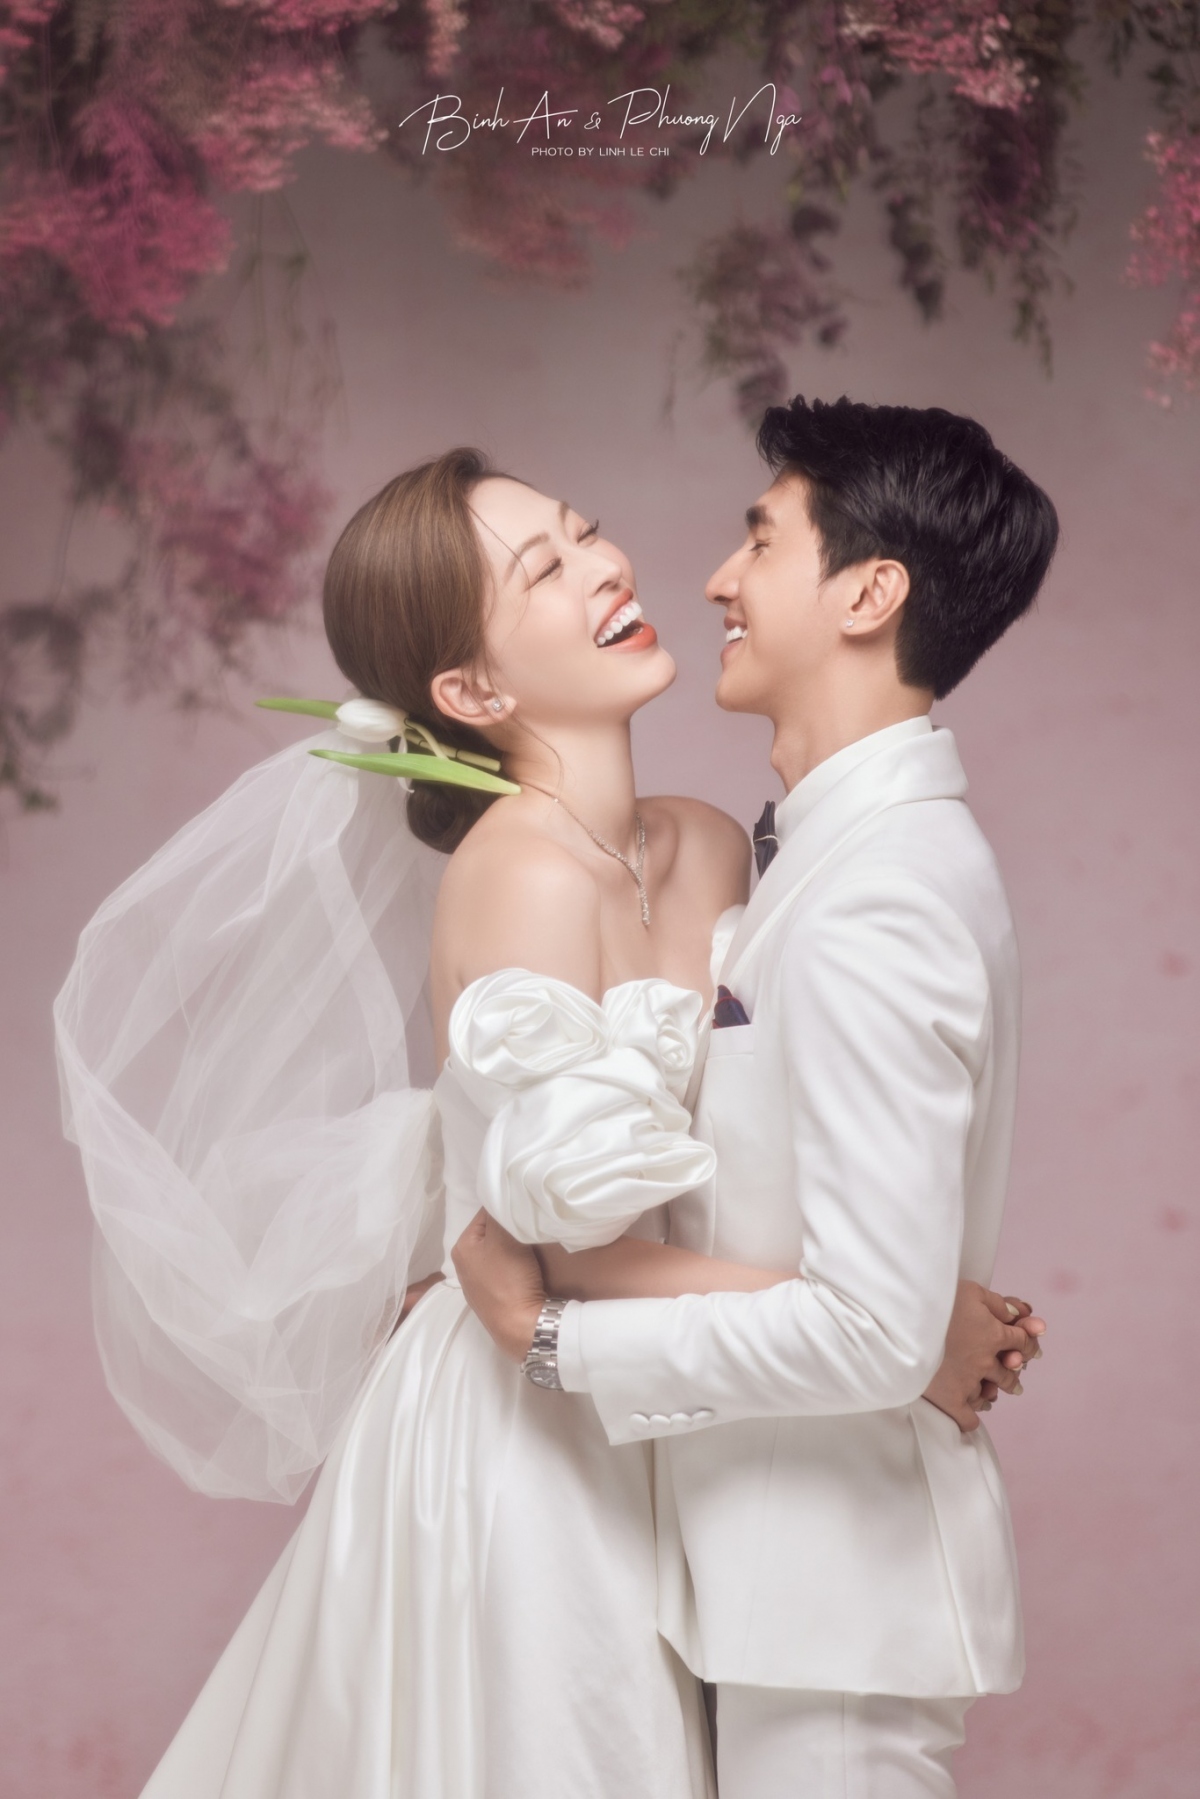 Nếu bạn đang tìm kiếm ý tưởng cho album ảnh cưới của mình, một bộ ảnh cưới Hàn Quốc đầy tinh tế và lãng mạn sẽ là sự lựa chọn hoàn hảo. Với những bối cảnh đẹp như mơ và phong cách thời trang độc đáo, bạn sẽ không thể rời mắt khỏi những hình ảnh đầy cảm xúc này.